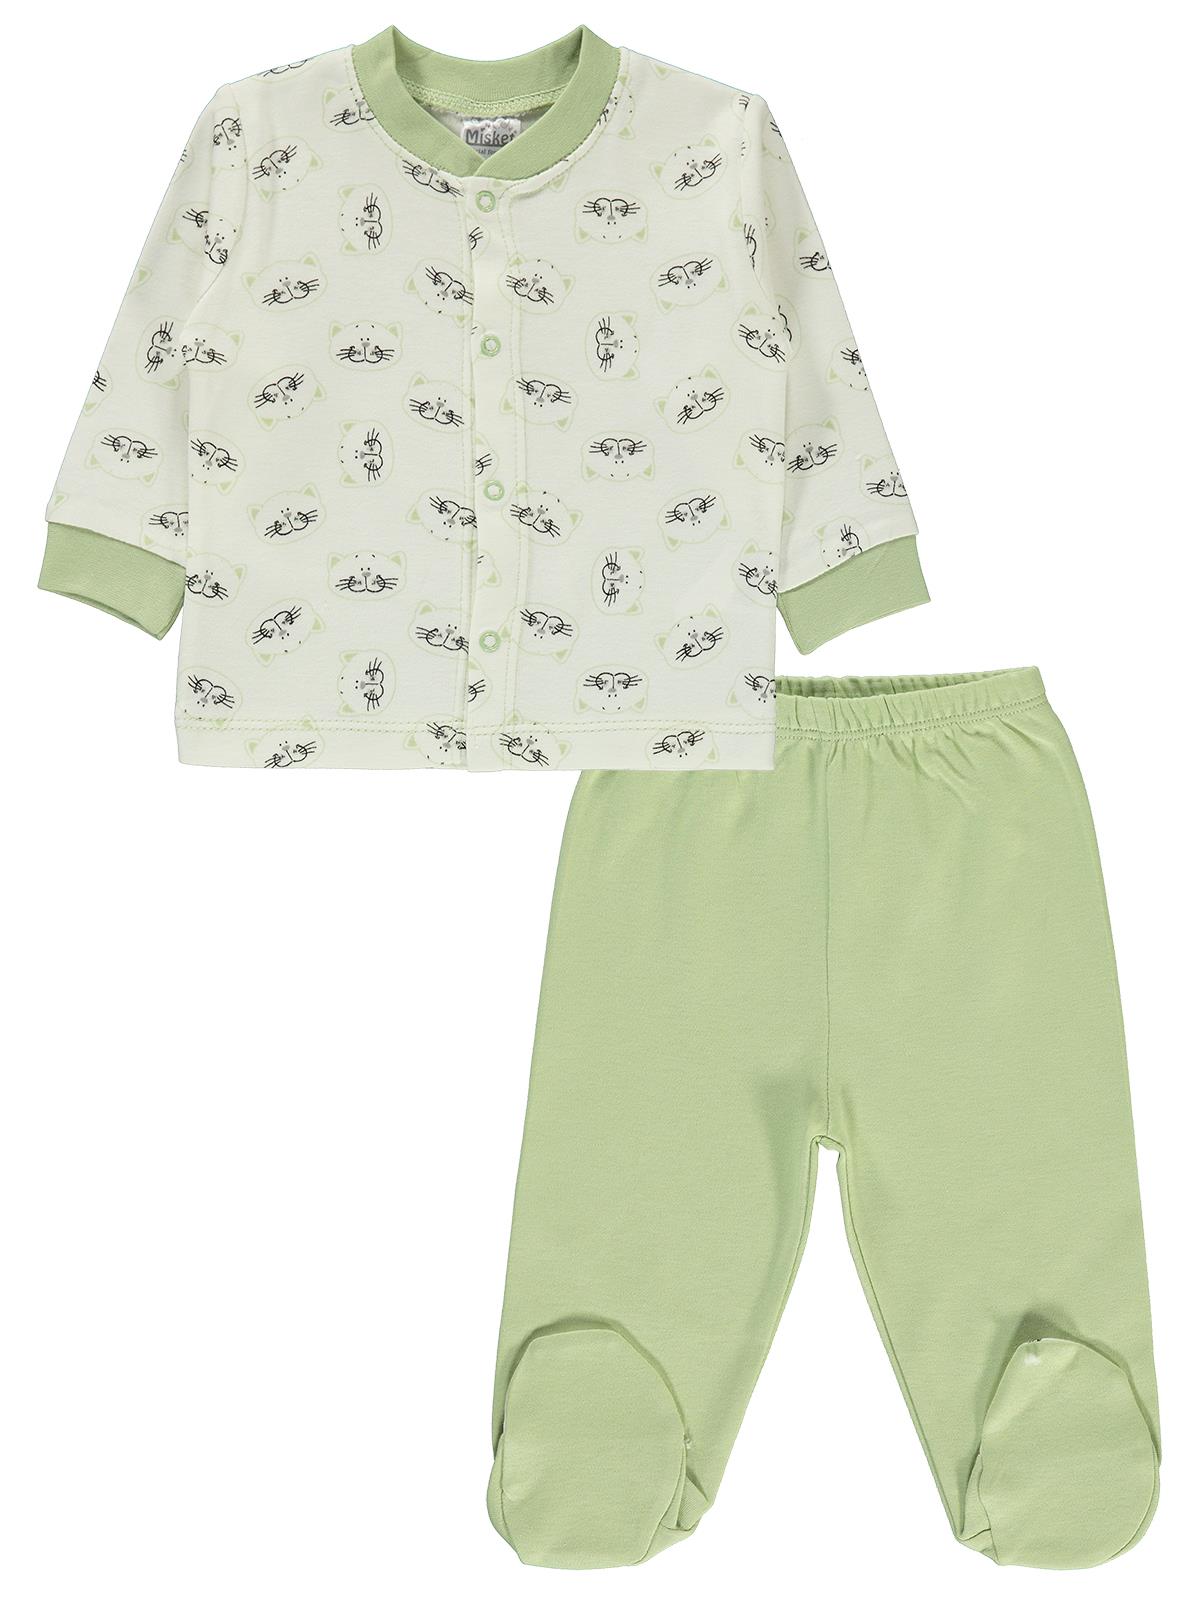 Misket Erkek Bebek Pijama Takımı 0-6 Ay Yeşil